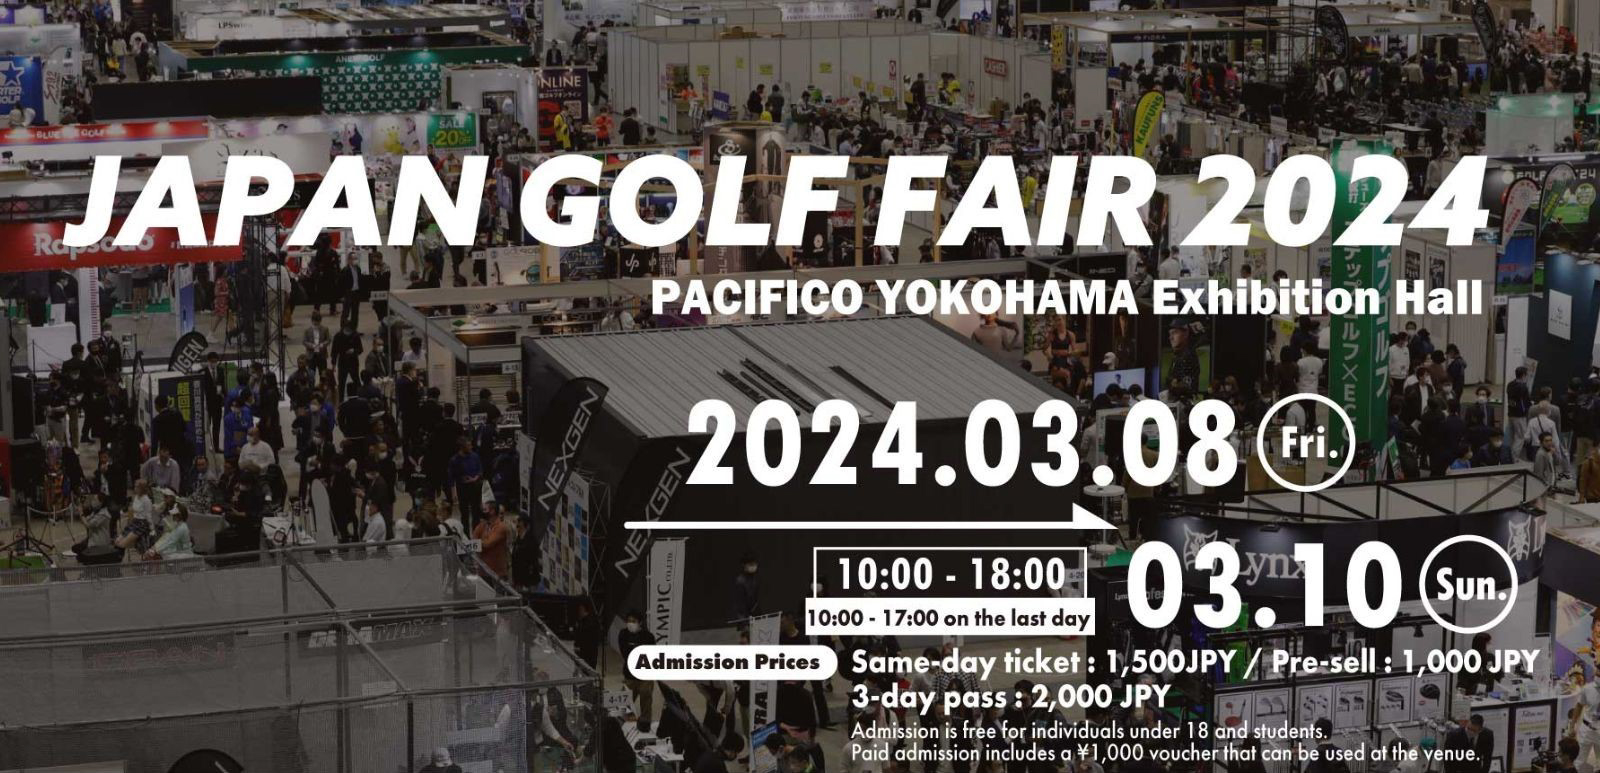 Japan Golf Fair 2024 - Triển lãm golf Nhật Bản lần thứ 58